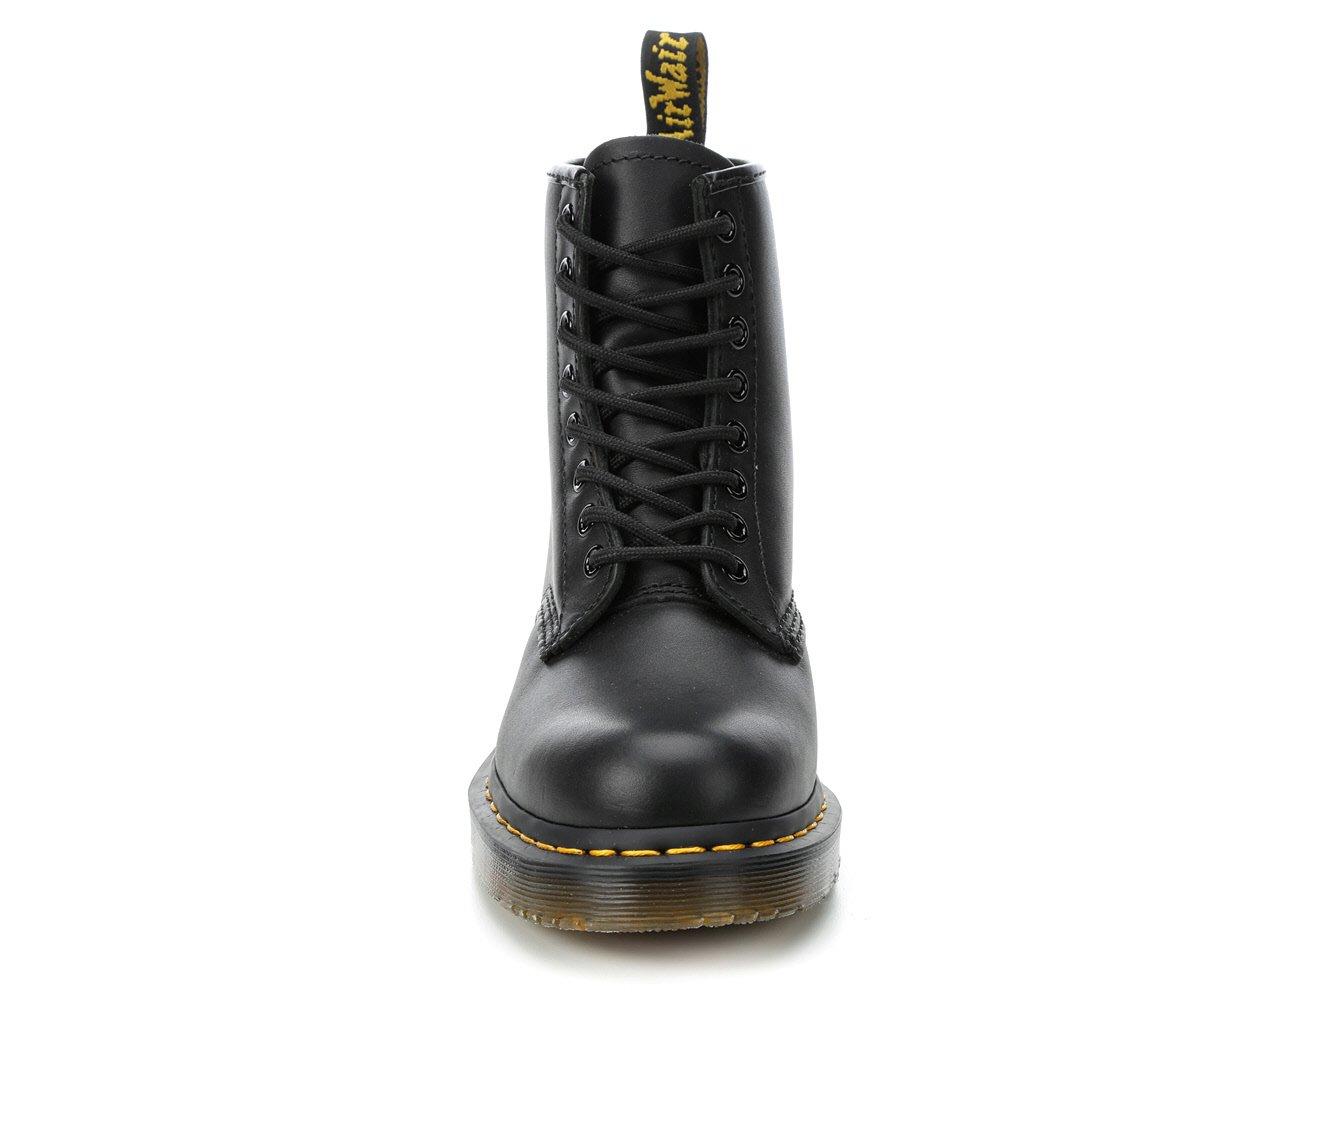 Men's Dr. Martens 1460 Slip Resistant Safety Boots